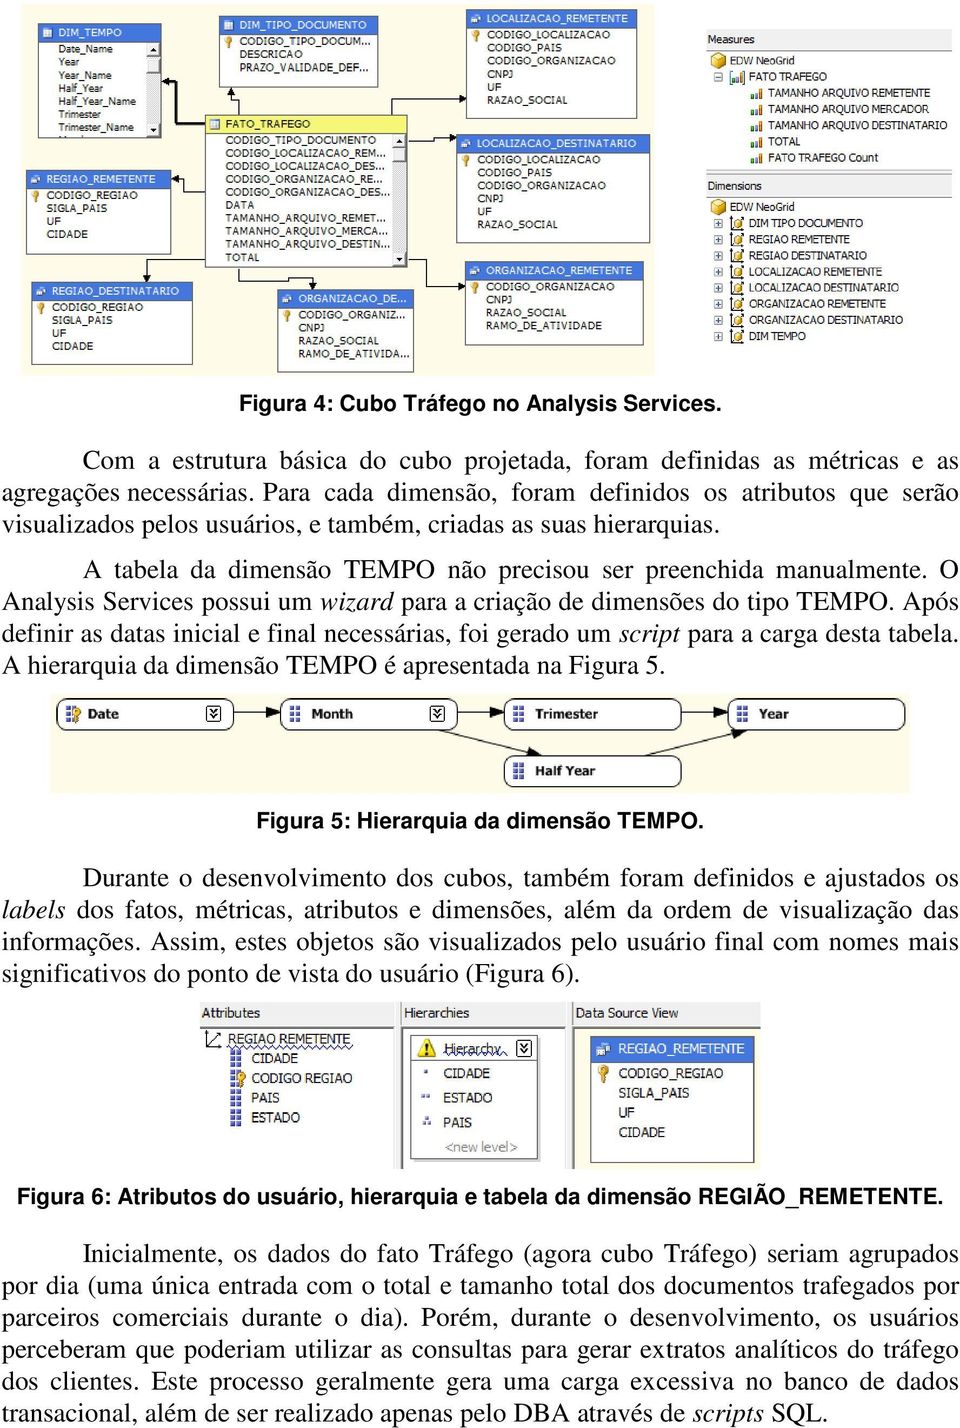 O Analysis Services possui um wizard para a criação de dimensões do tipo TEMPO. Após definir as datas inicial e final necessárias, foi gerado um script para a carga desta tabela.